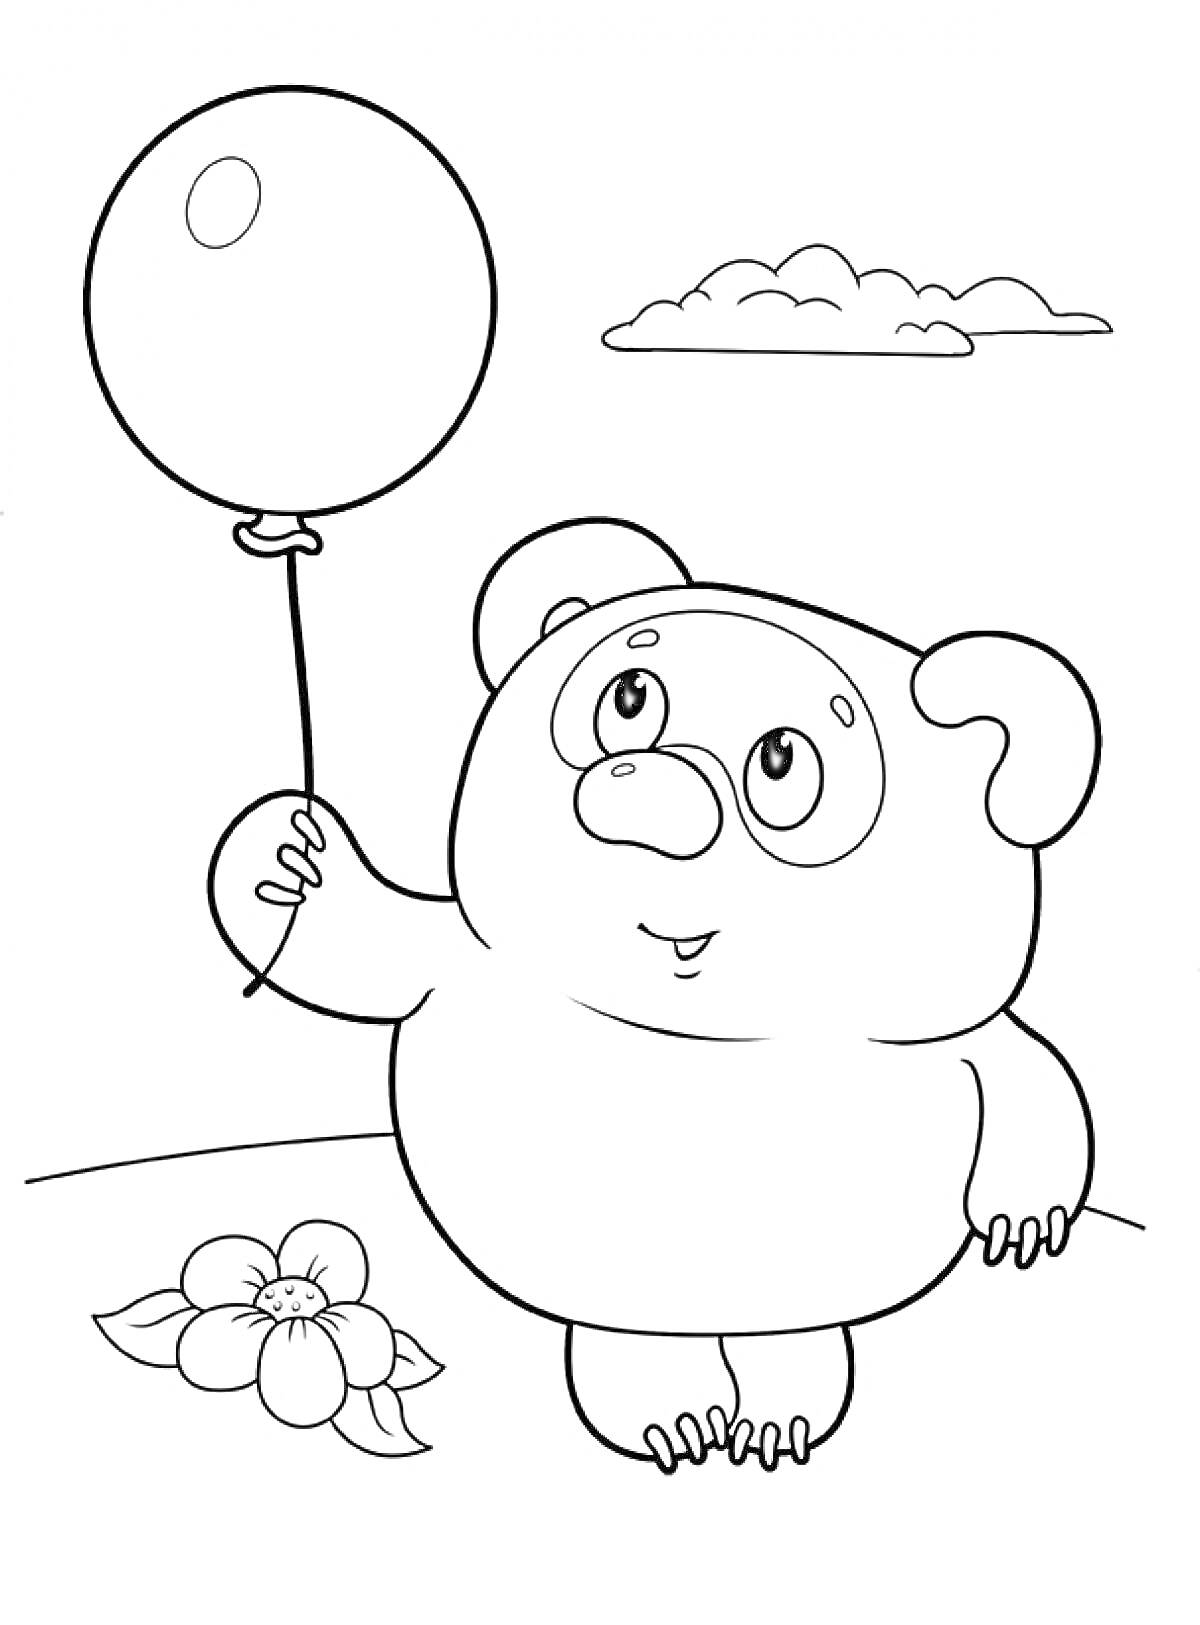 Раскраска Винни Пух с шариком, цветок и облако